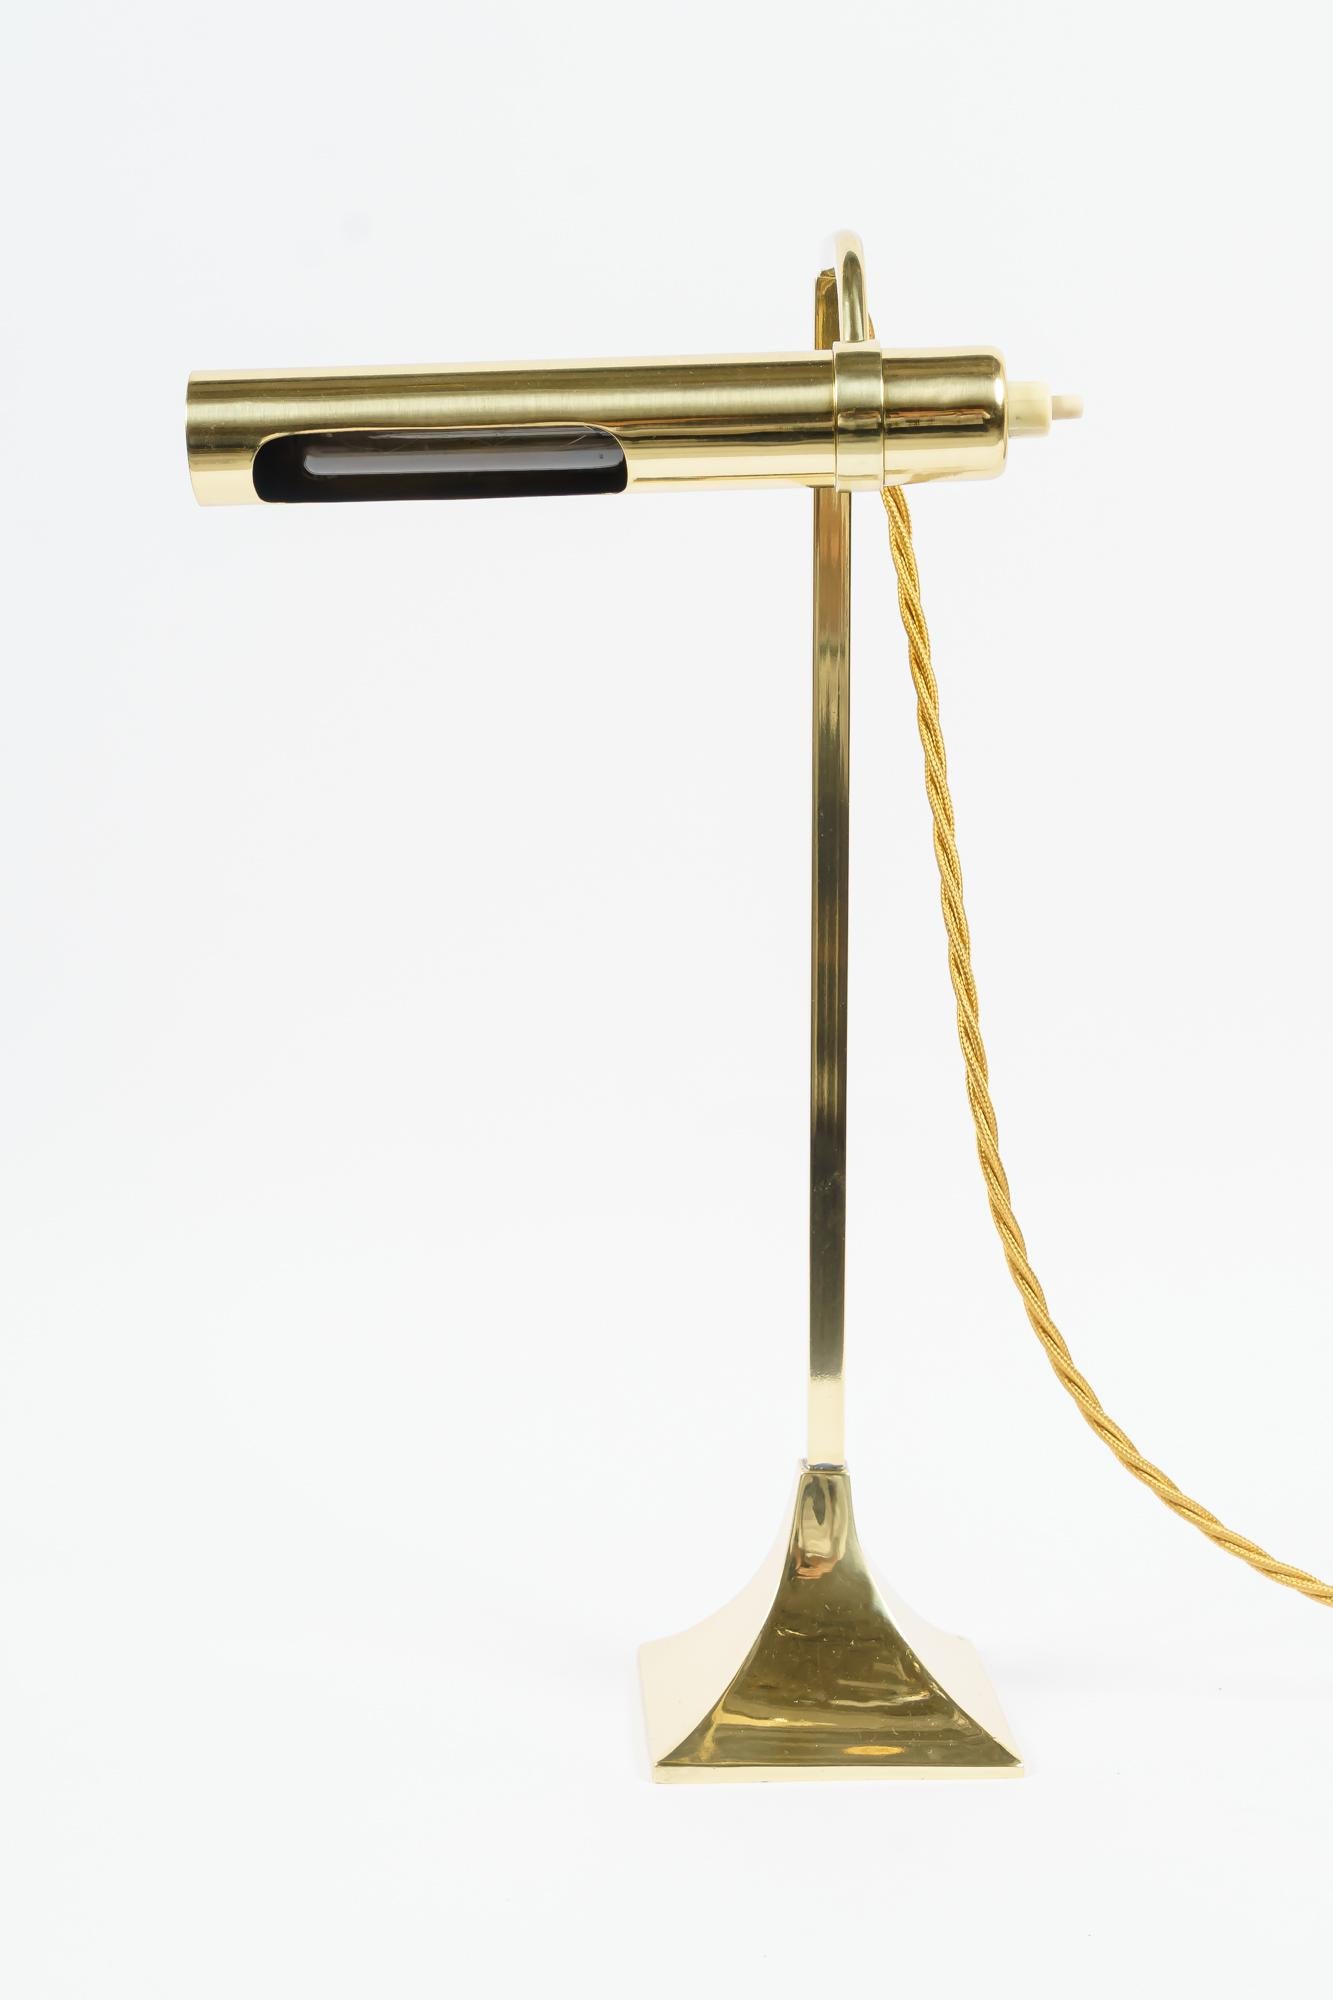 Lampe de table Art Déco viennoise vers 1920
Polis et émaillés au four
la partie supérieure est amovible